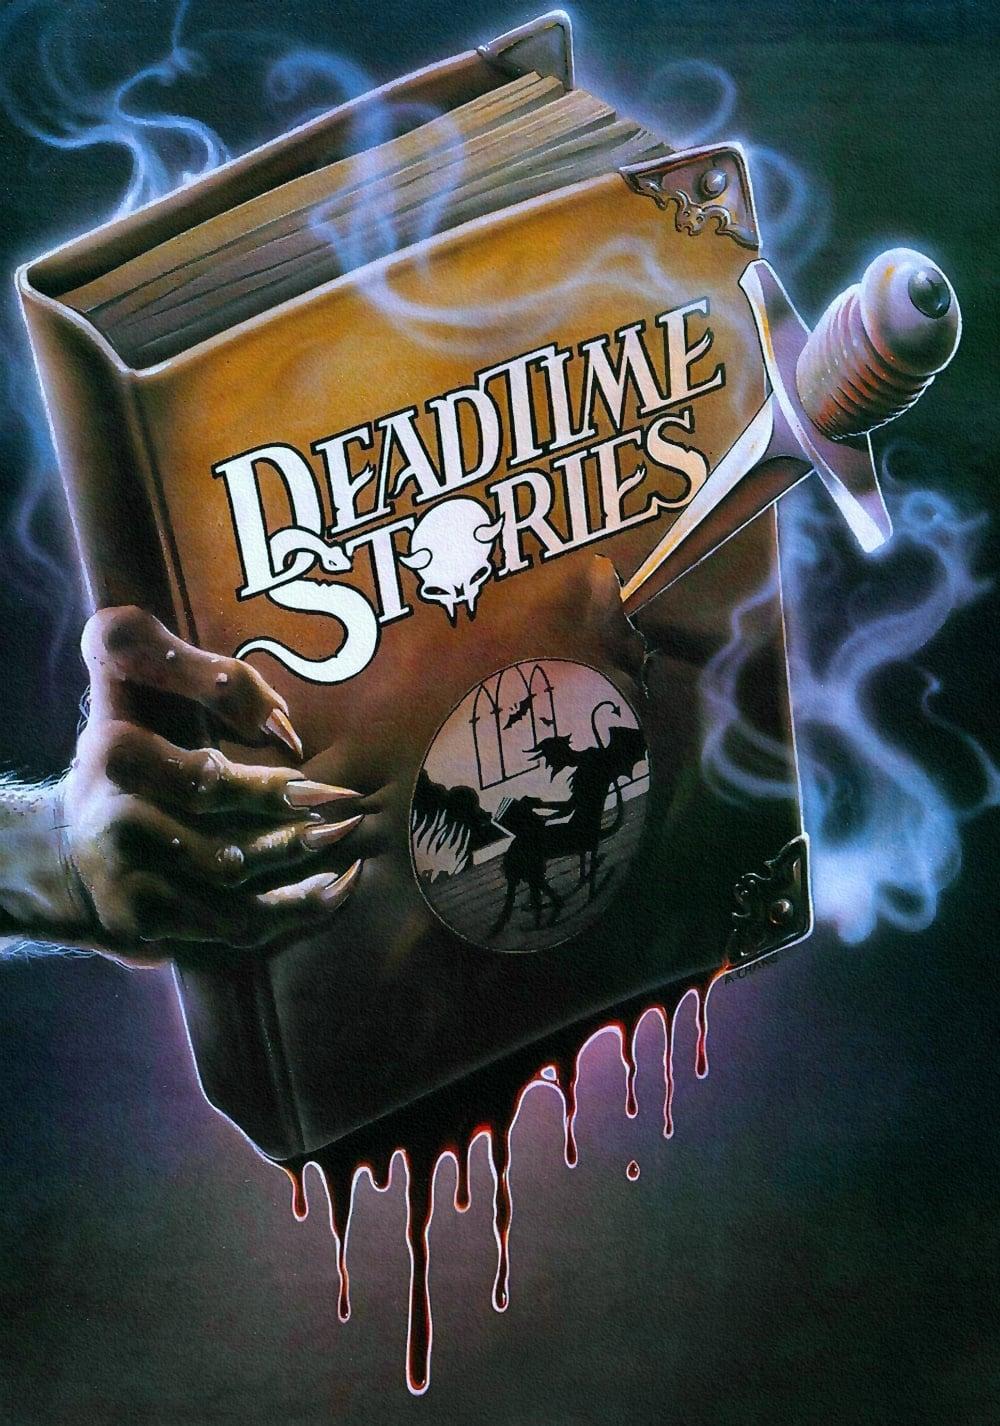 Deadtime Stories poster